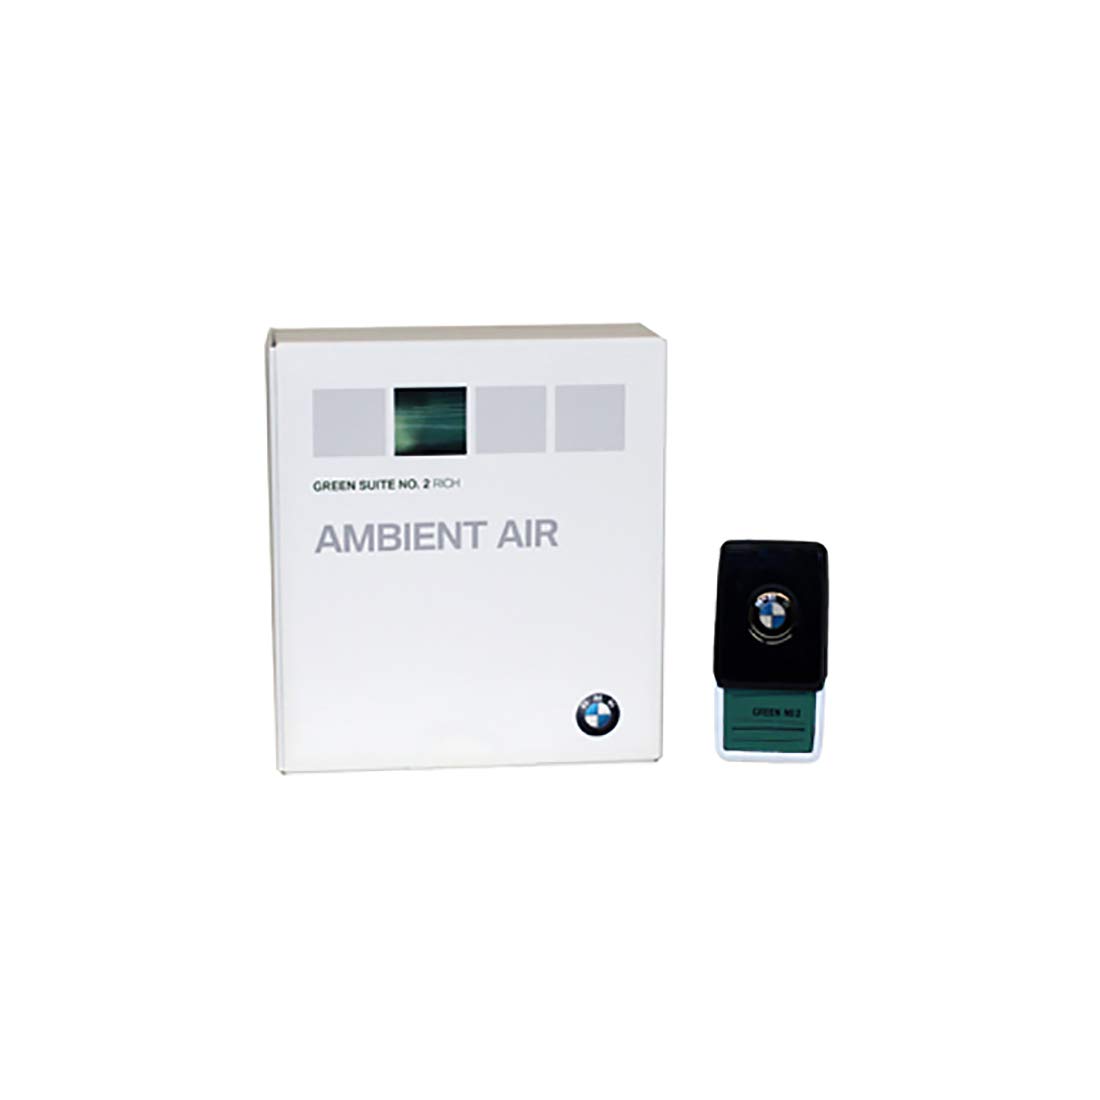 BMW Ambient Air, Green Suite No. 2 Plug-In-Duft, für BMW 5er G3x 7er G1x von BMW